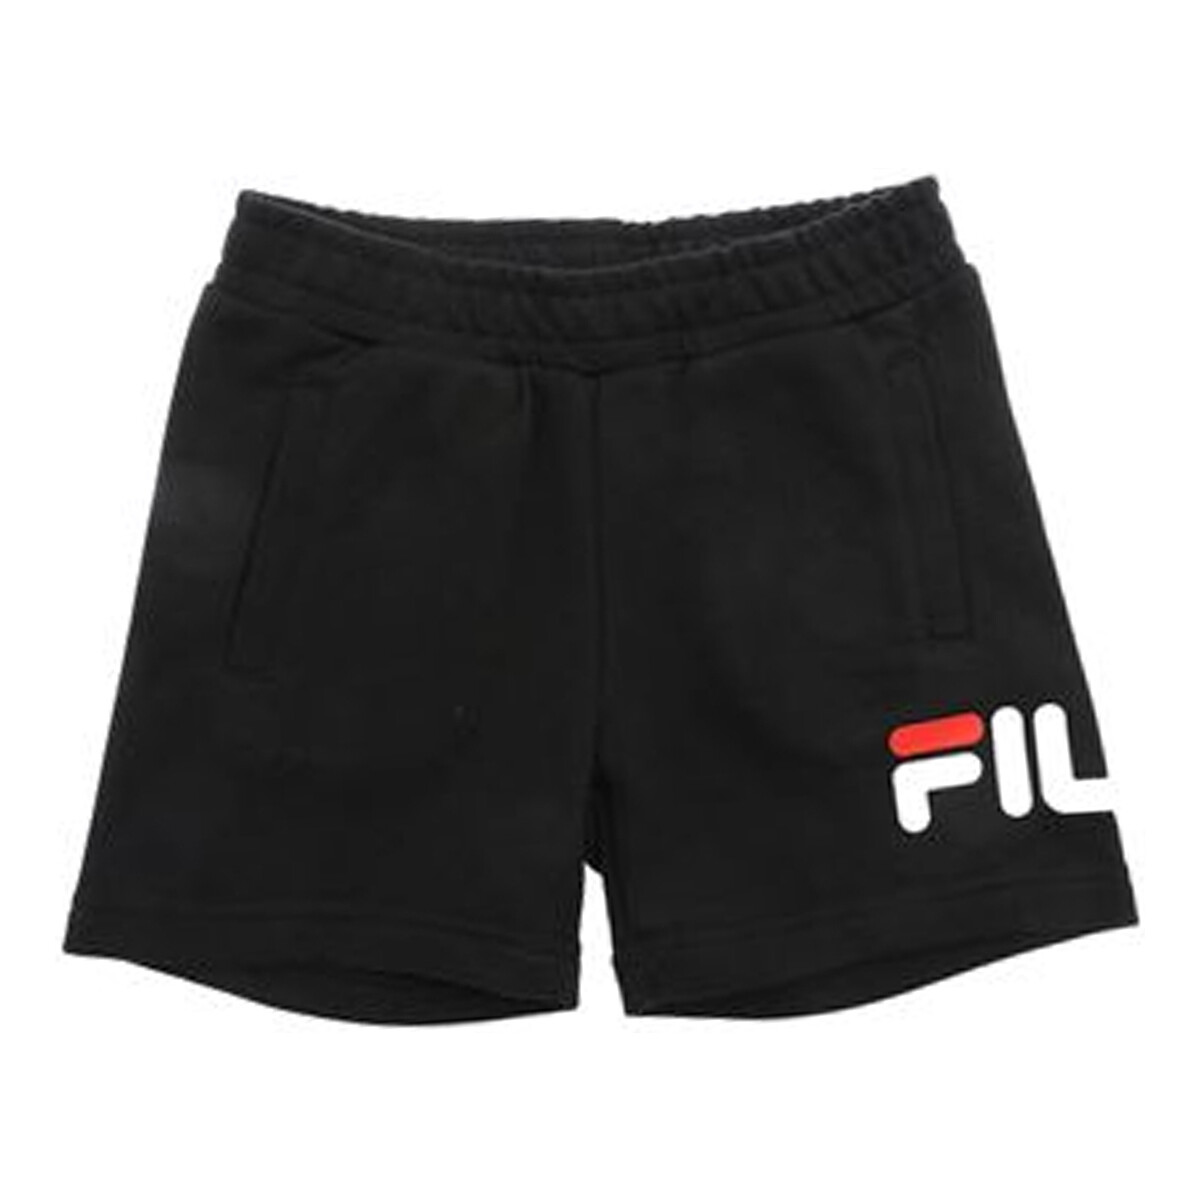 Textil Criança Shorts / Bermudas Fila 688095-002 Preto